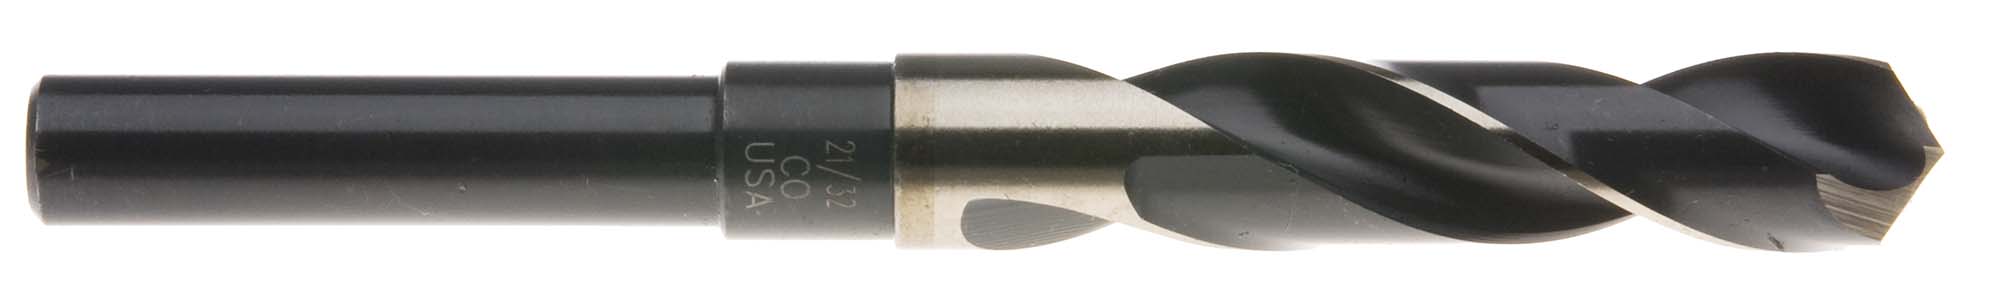 15/16" S and D Drill (1/2" shank) USA Cobalt